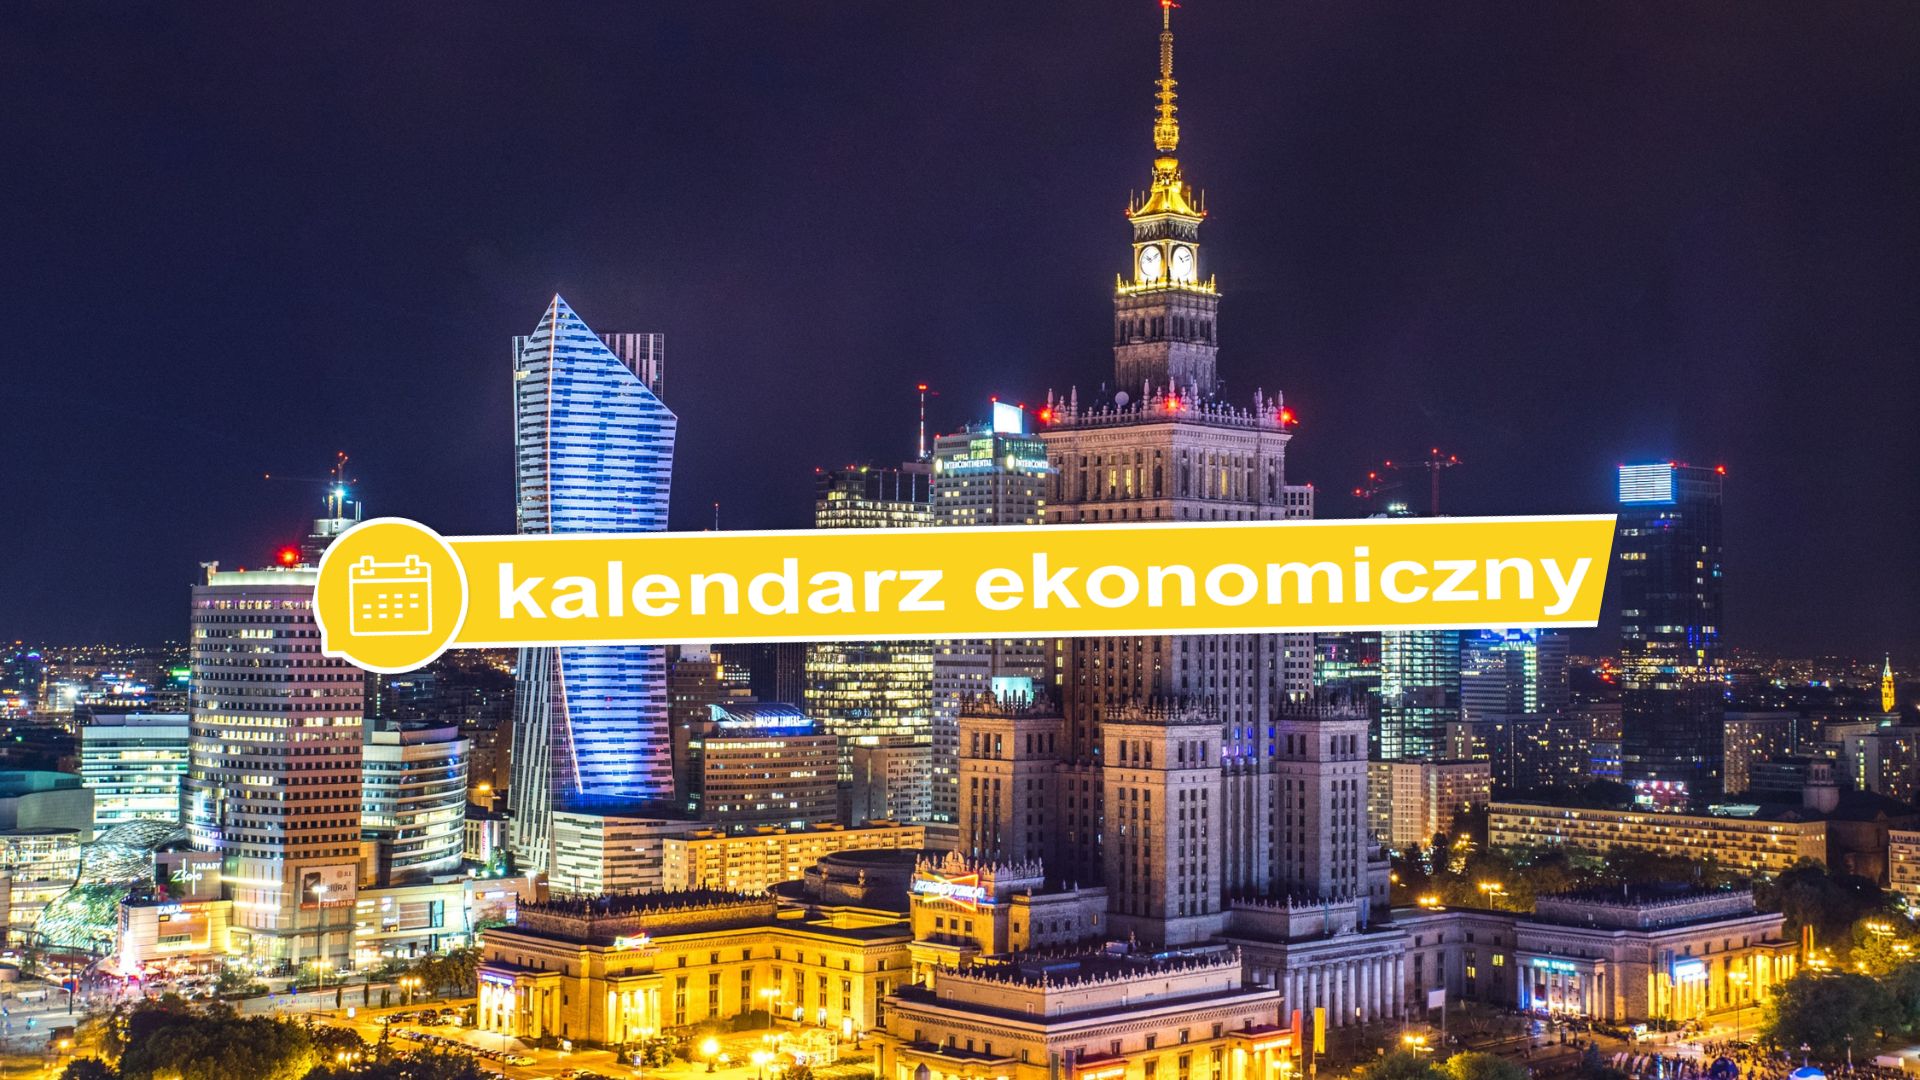 Kalendarz ekonomiczny - napis na tle zdjęcia centrum Warszawy